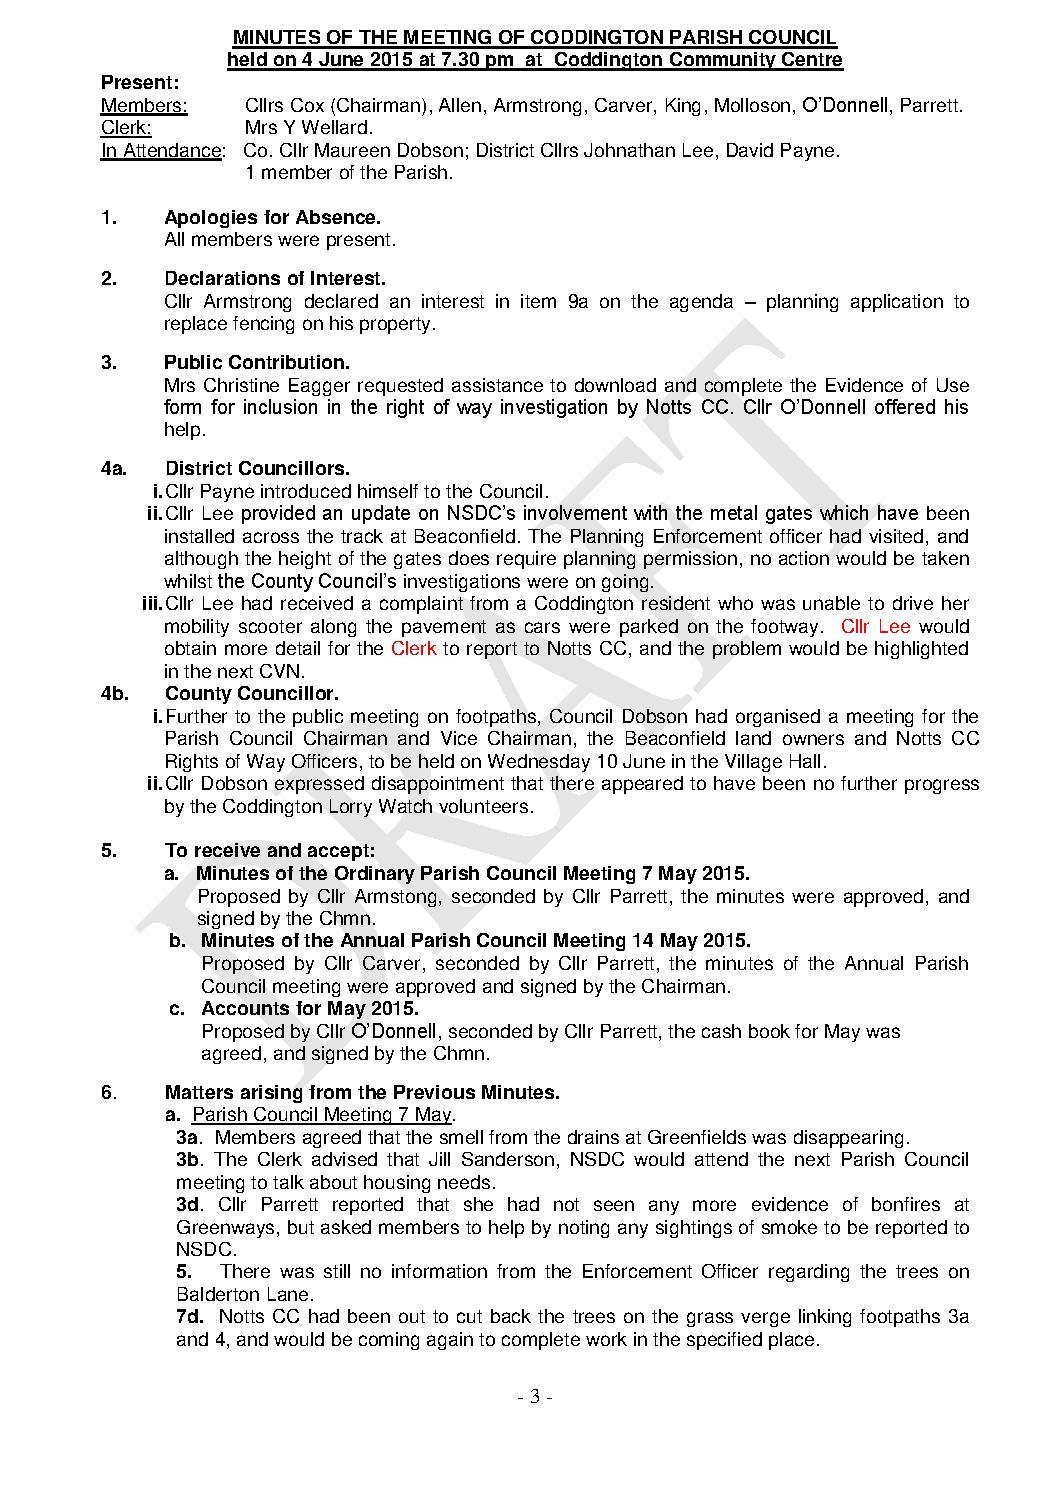 Parish Council Meeting 4 June 2015 Minutes